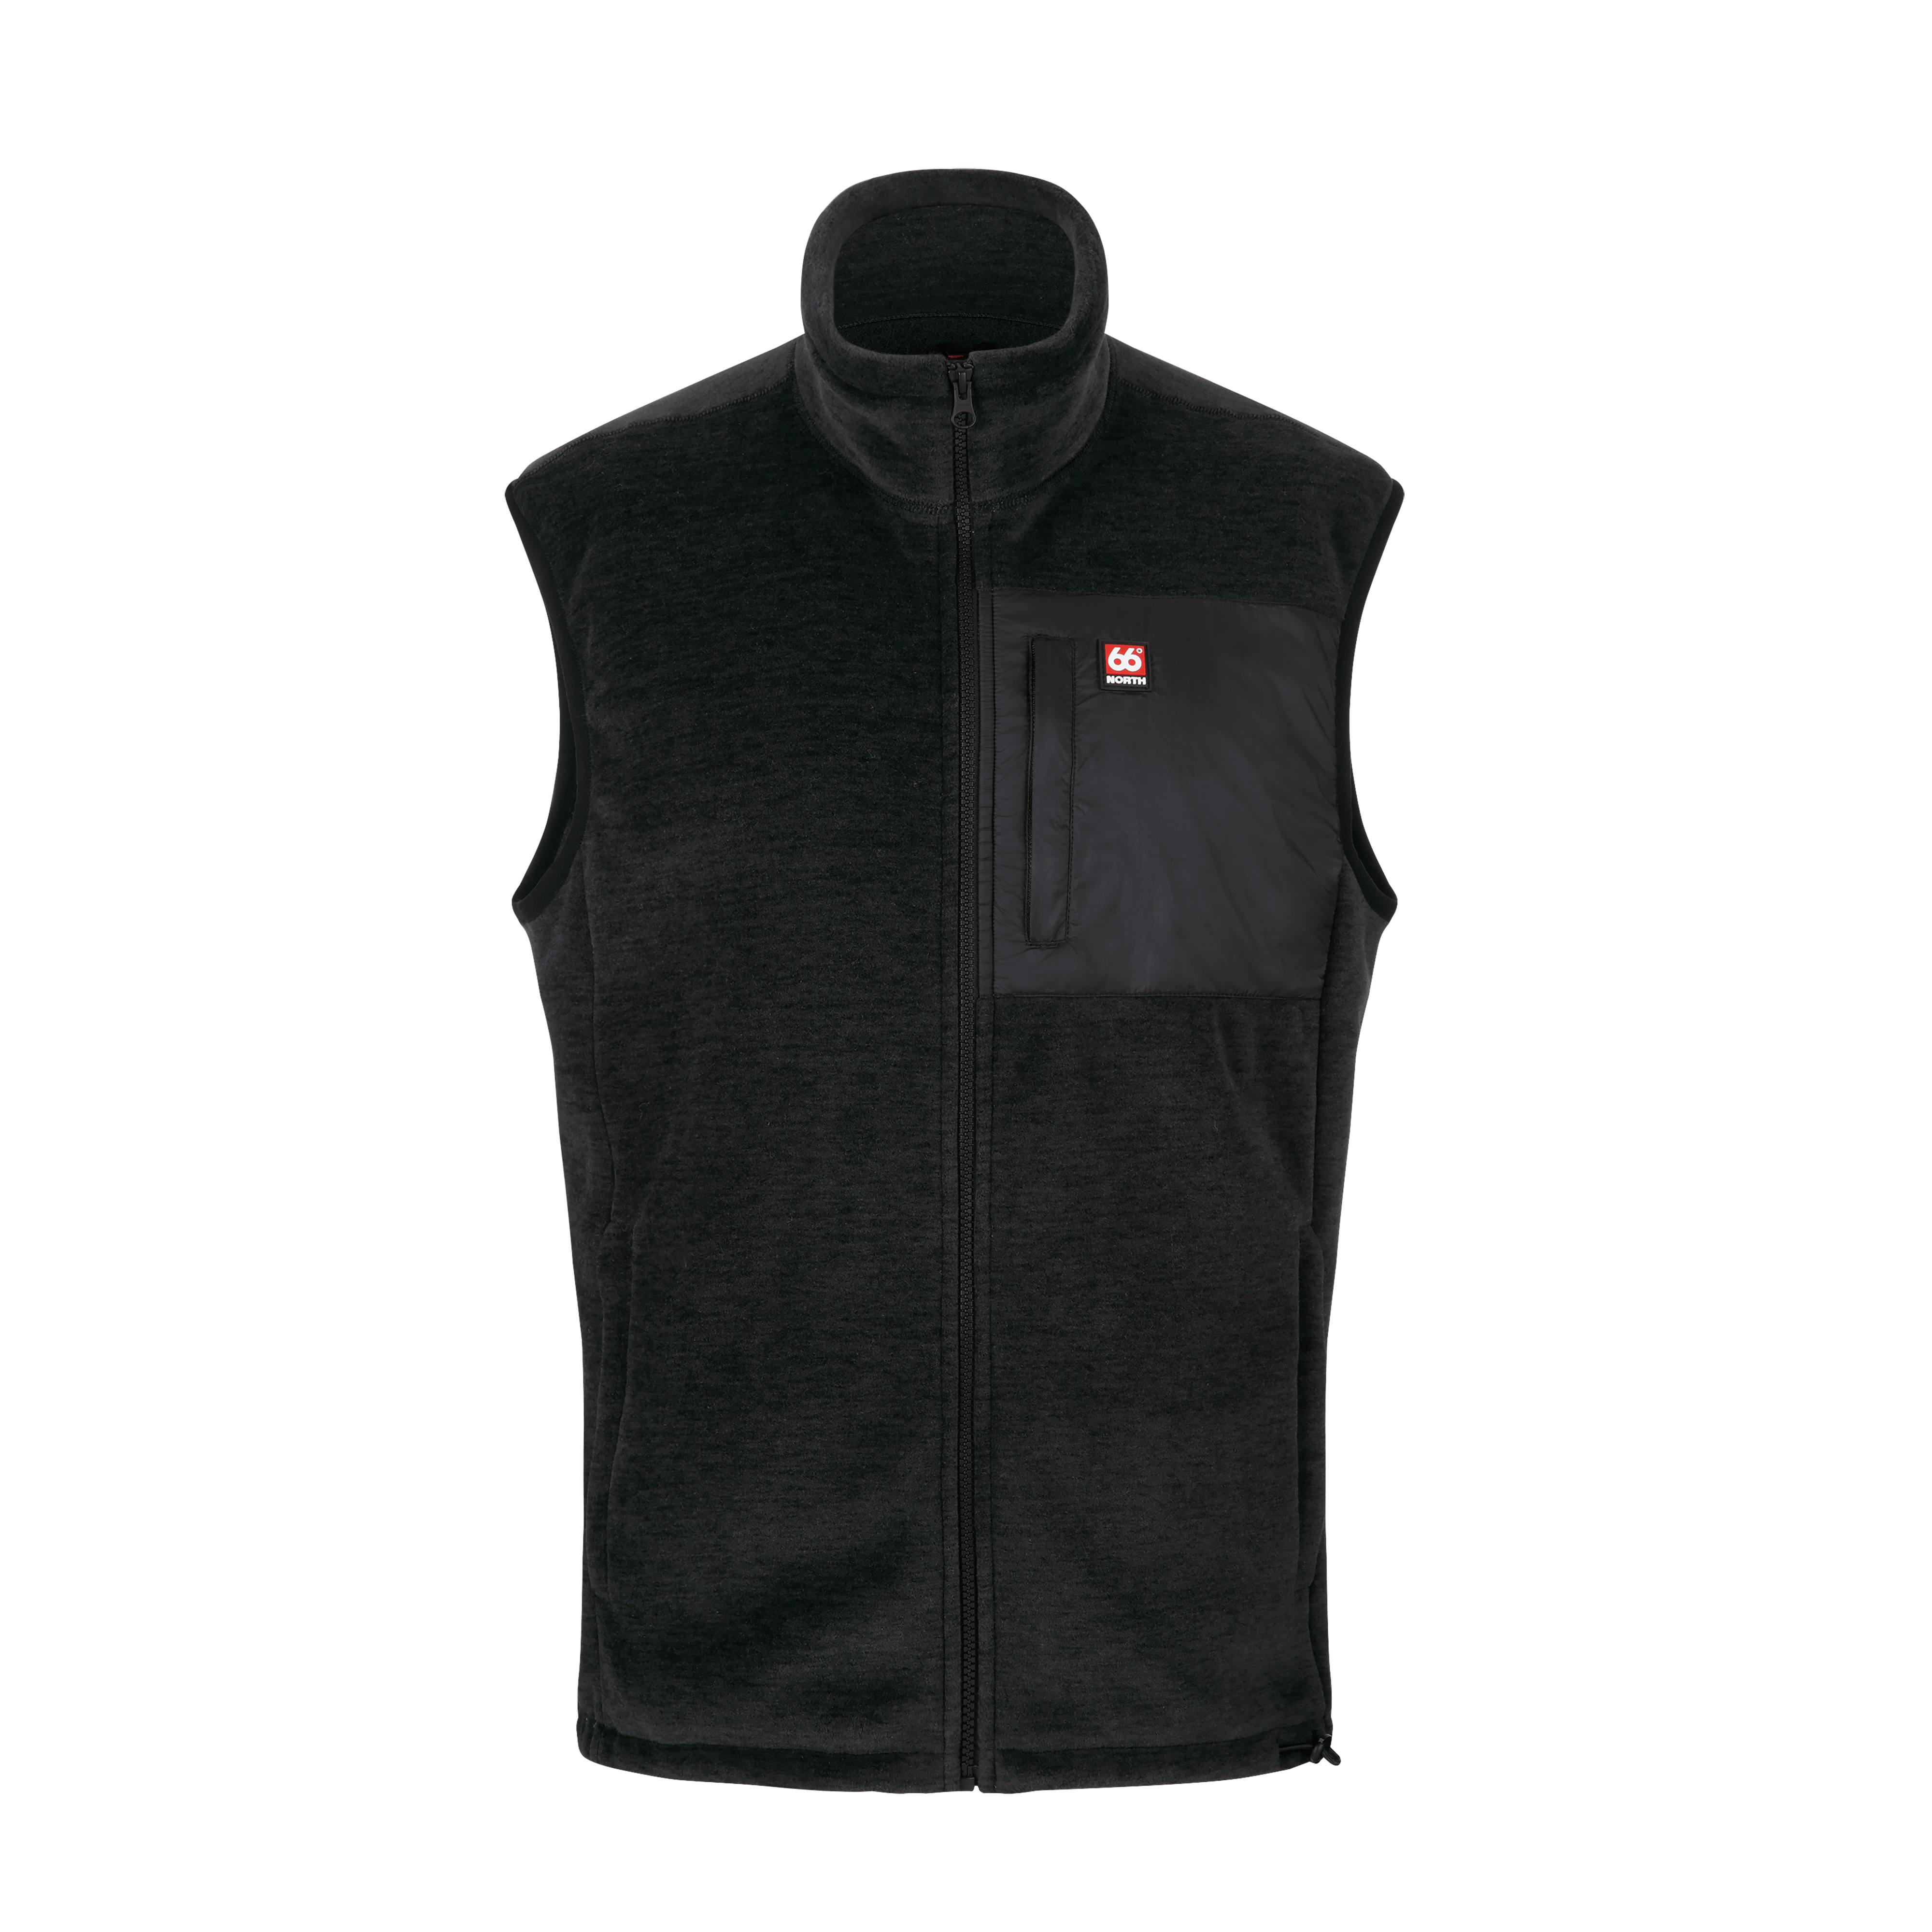 66 North Men's Esja Jackets & Coats - Black - L